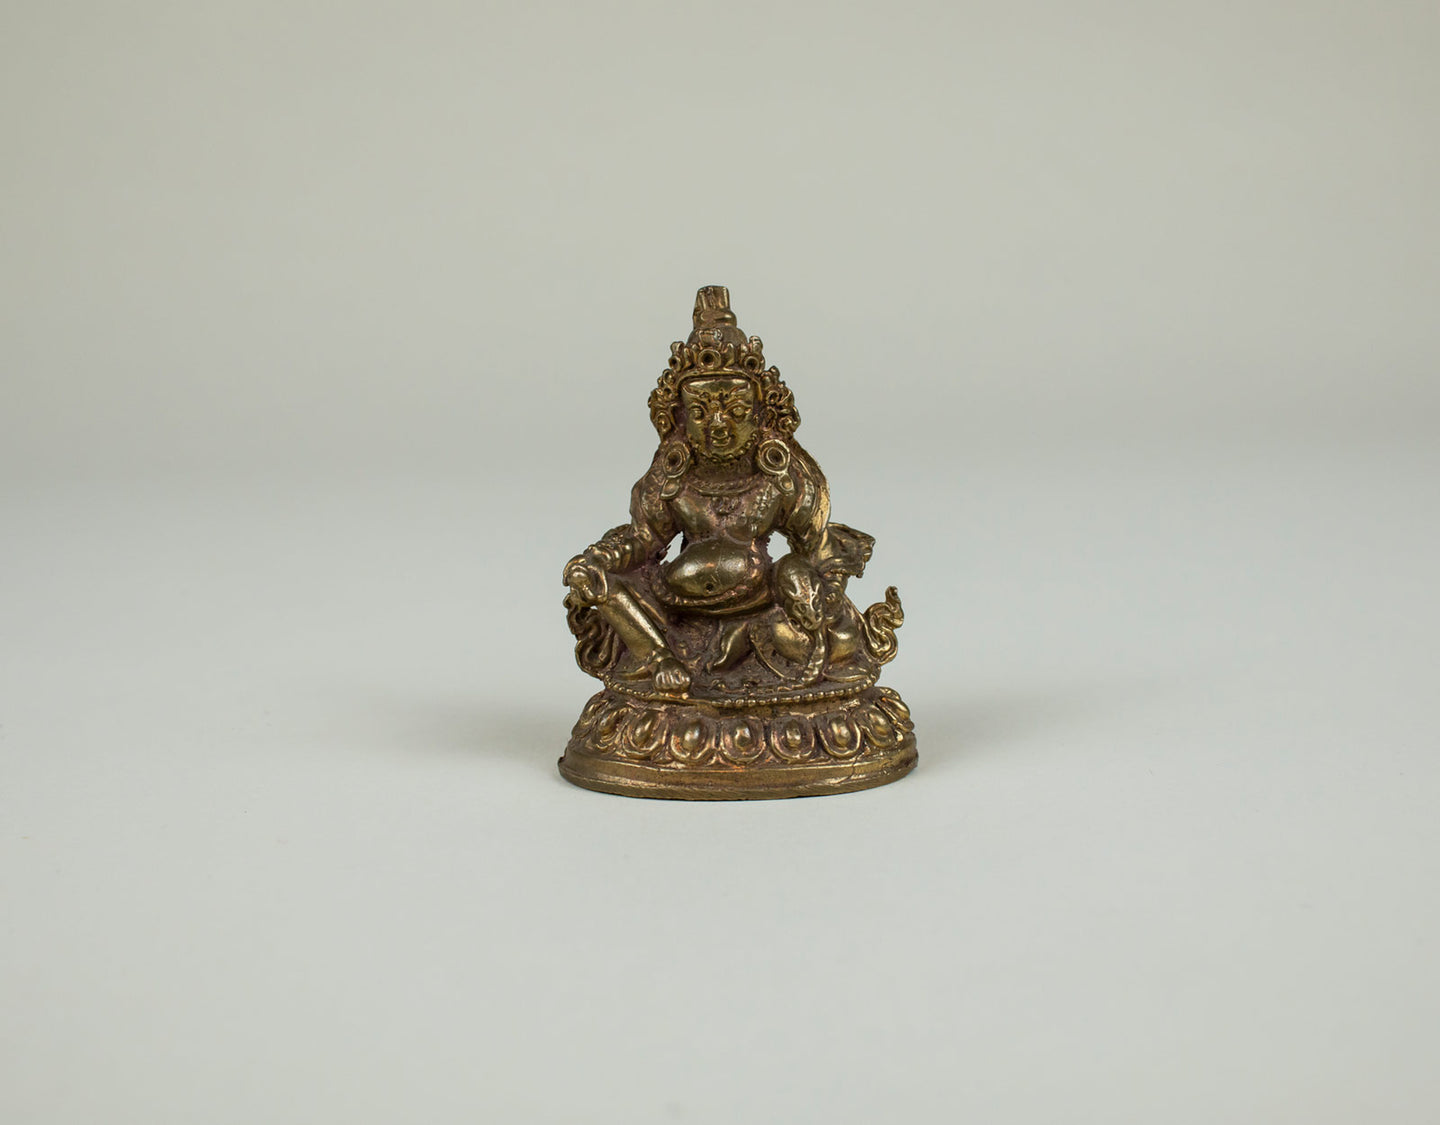 Buddha Zambala 5.5 cm